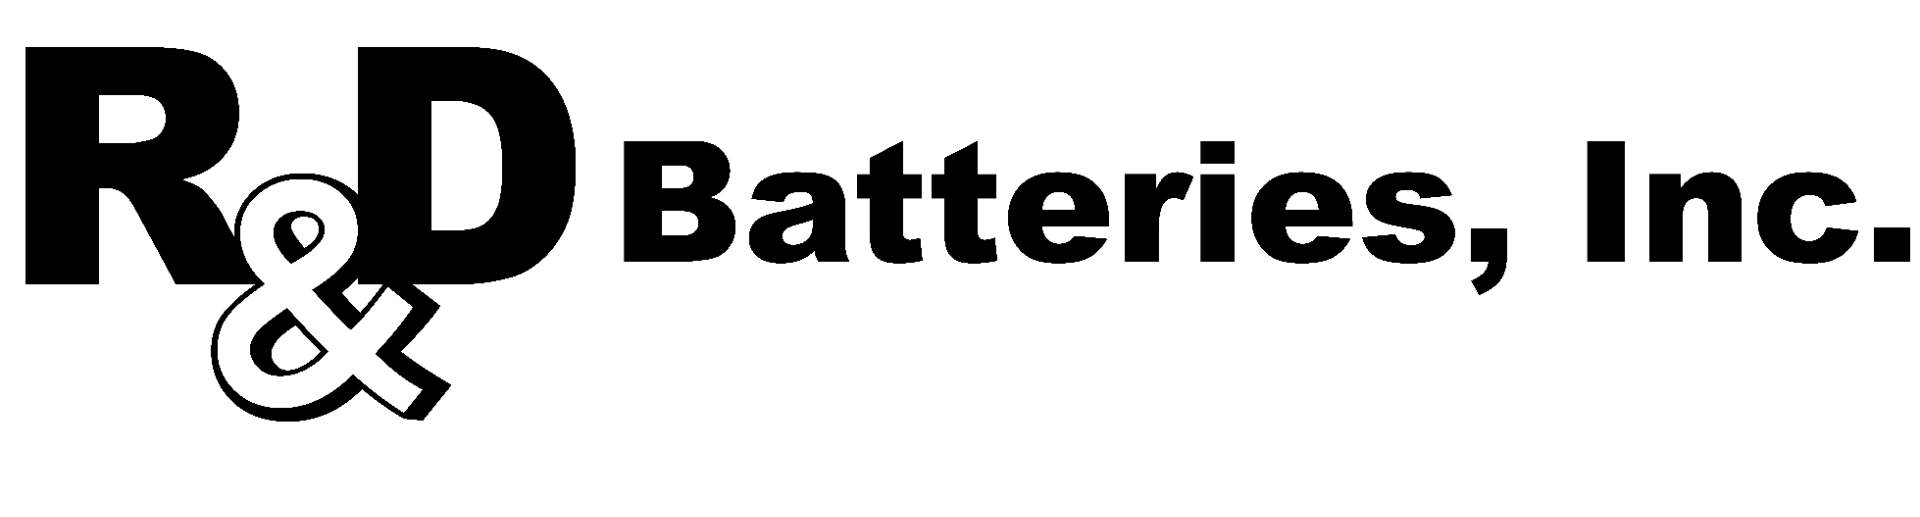 RD_Batteries_Logo-min